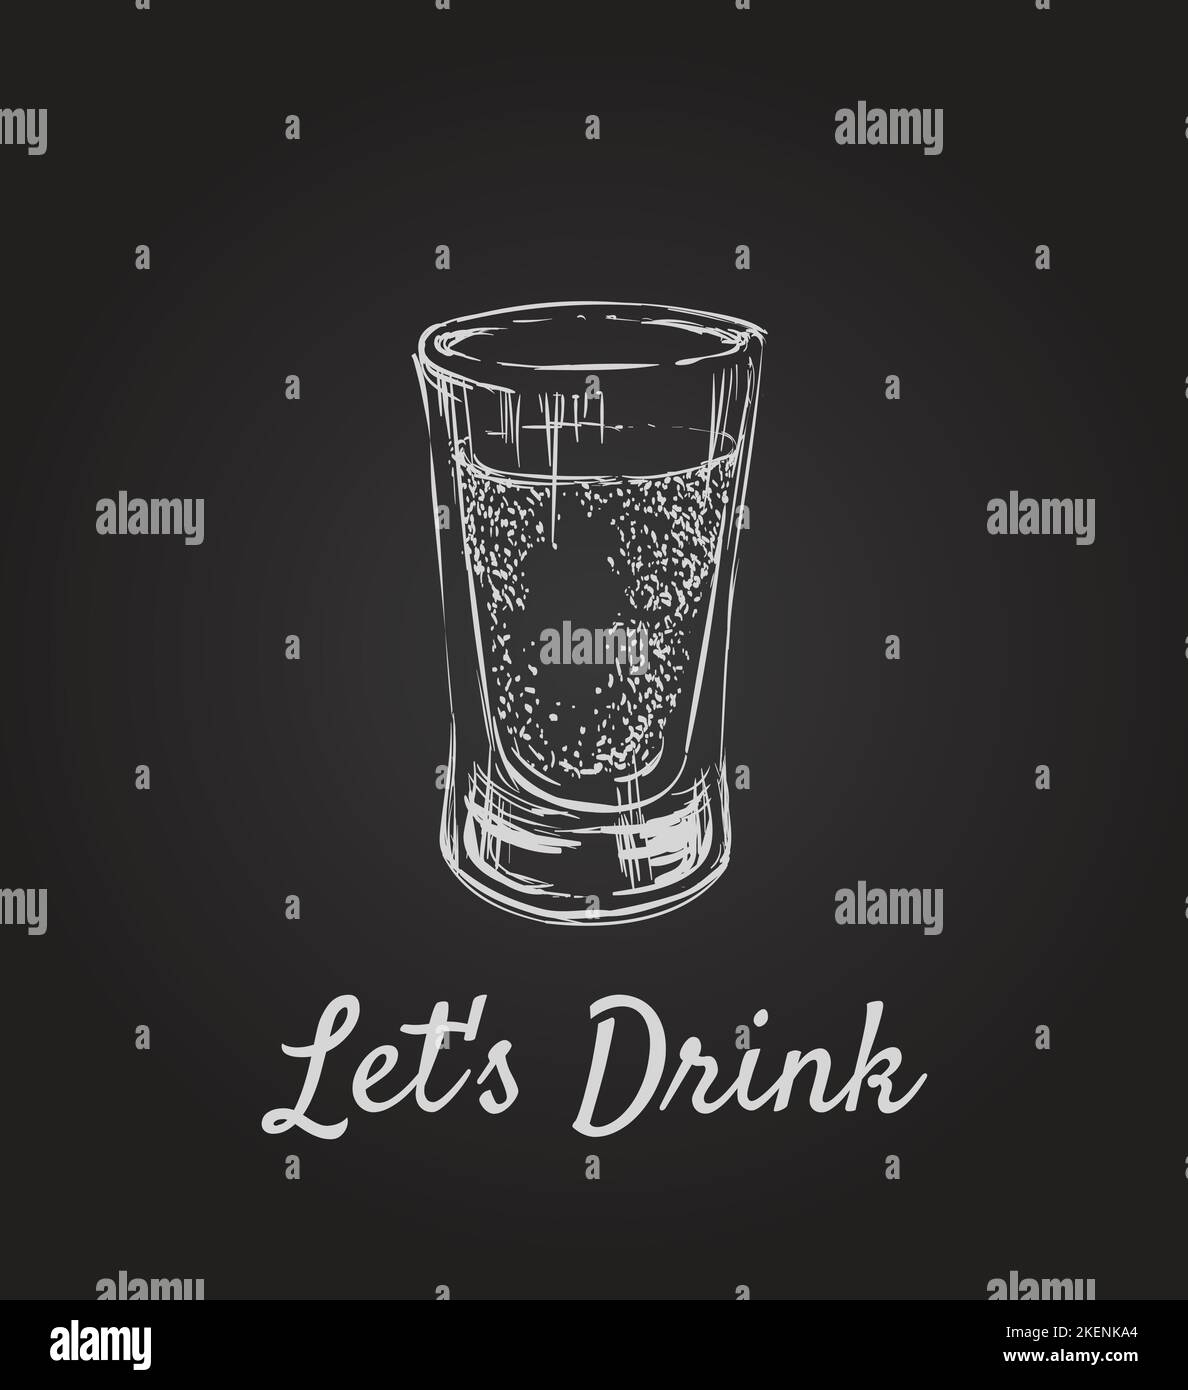 Lascia bere. Bevande alcoliche in bicchierini. Illustrazione vettoriale della bevanda disegnata a mano. Lascia bere. Bevande alcoliche in bicchierini. Bevanda disegnata a mano VEC Illustrazione Vettoriale